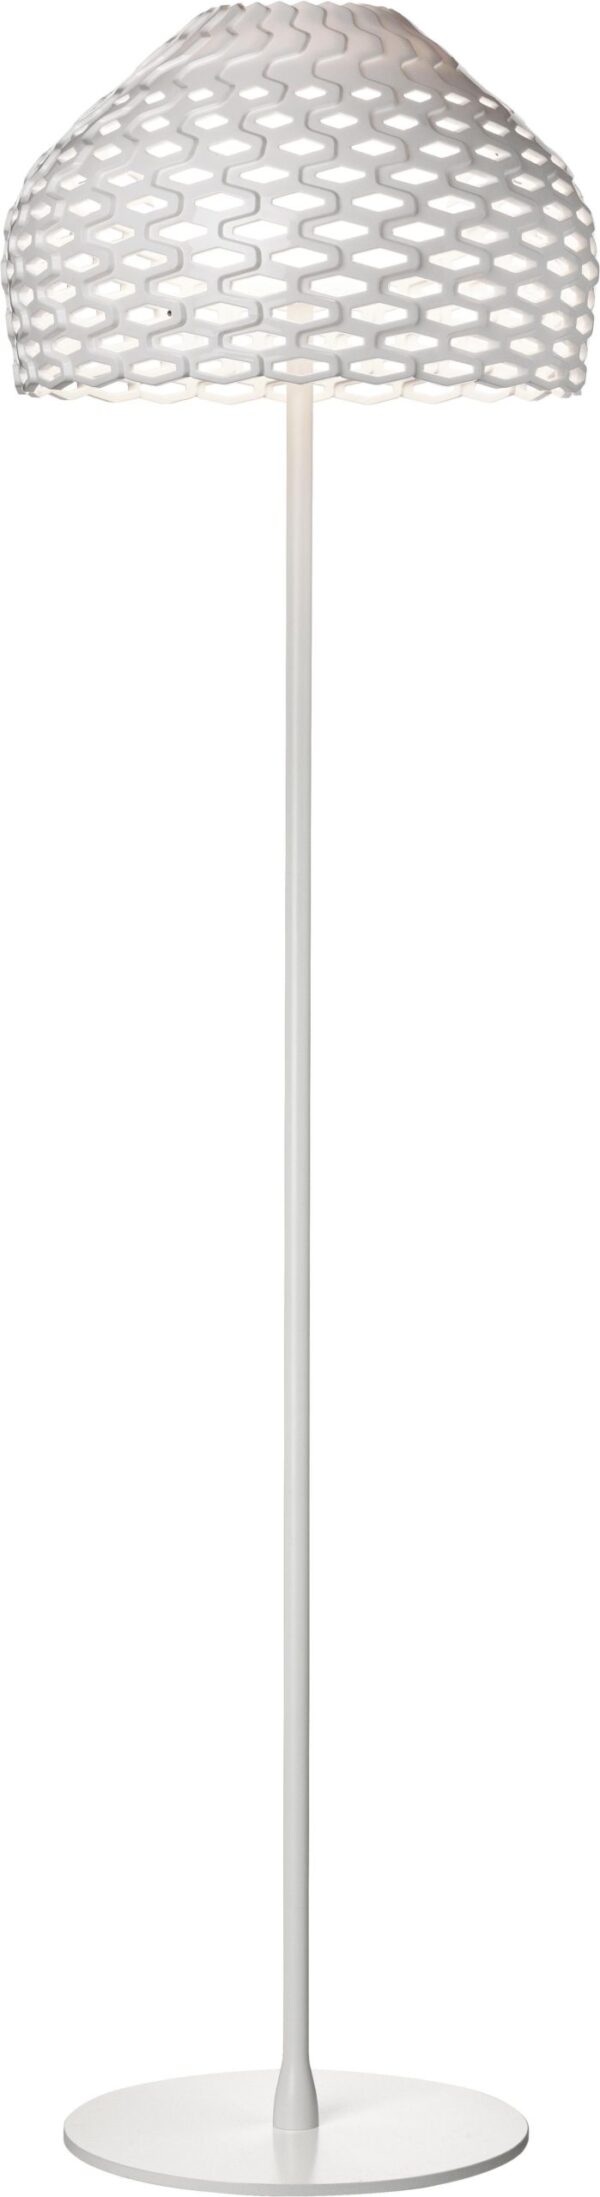 Lâmpada de assoalho Tatou F - H 180 cm Branco Flos Patricia Urquiola